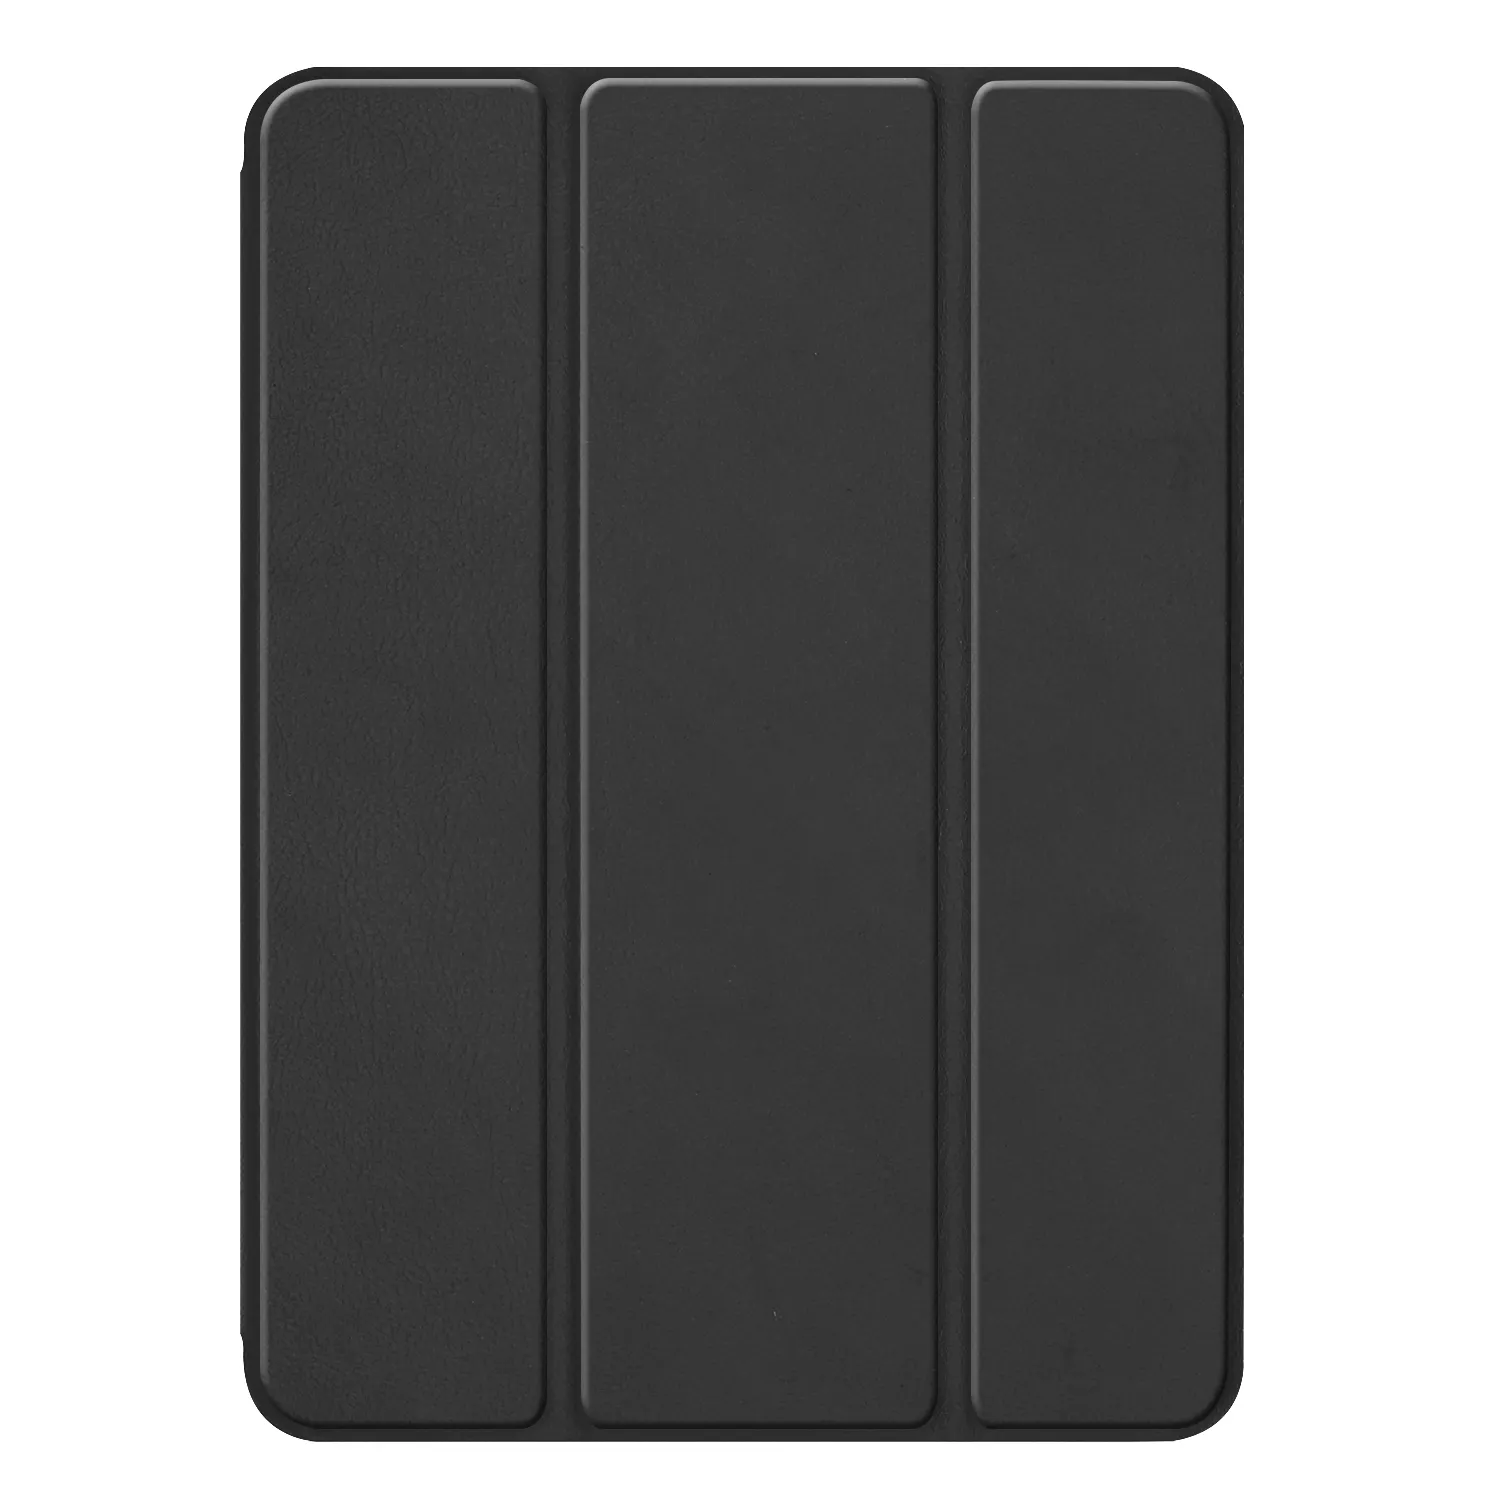 Чехол для планшета с углами, противоударный кожаный чехол 8 дюймов 5-го поколения из ТПУ, чехол для планшета с гнездом для ручки для Apple iPad Mini5 mini4 2019 8 дюймов